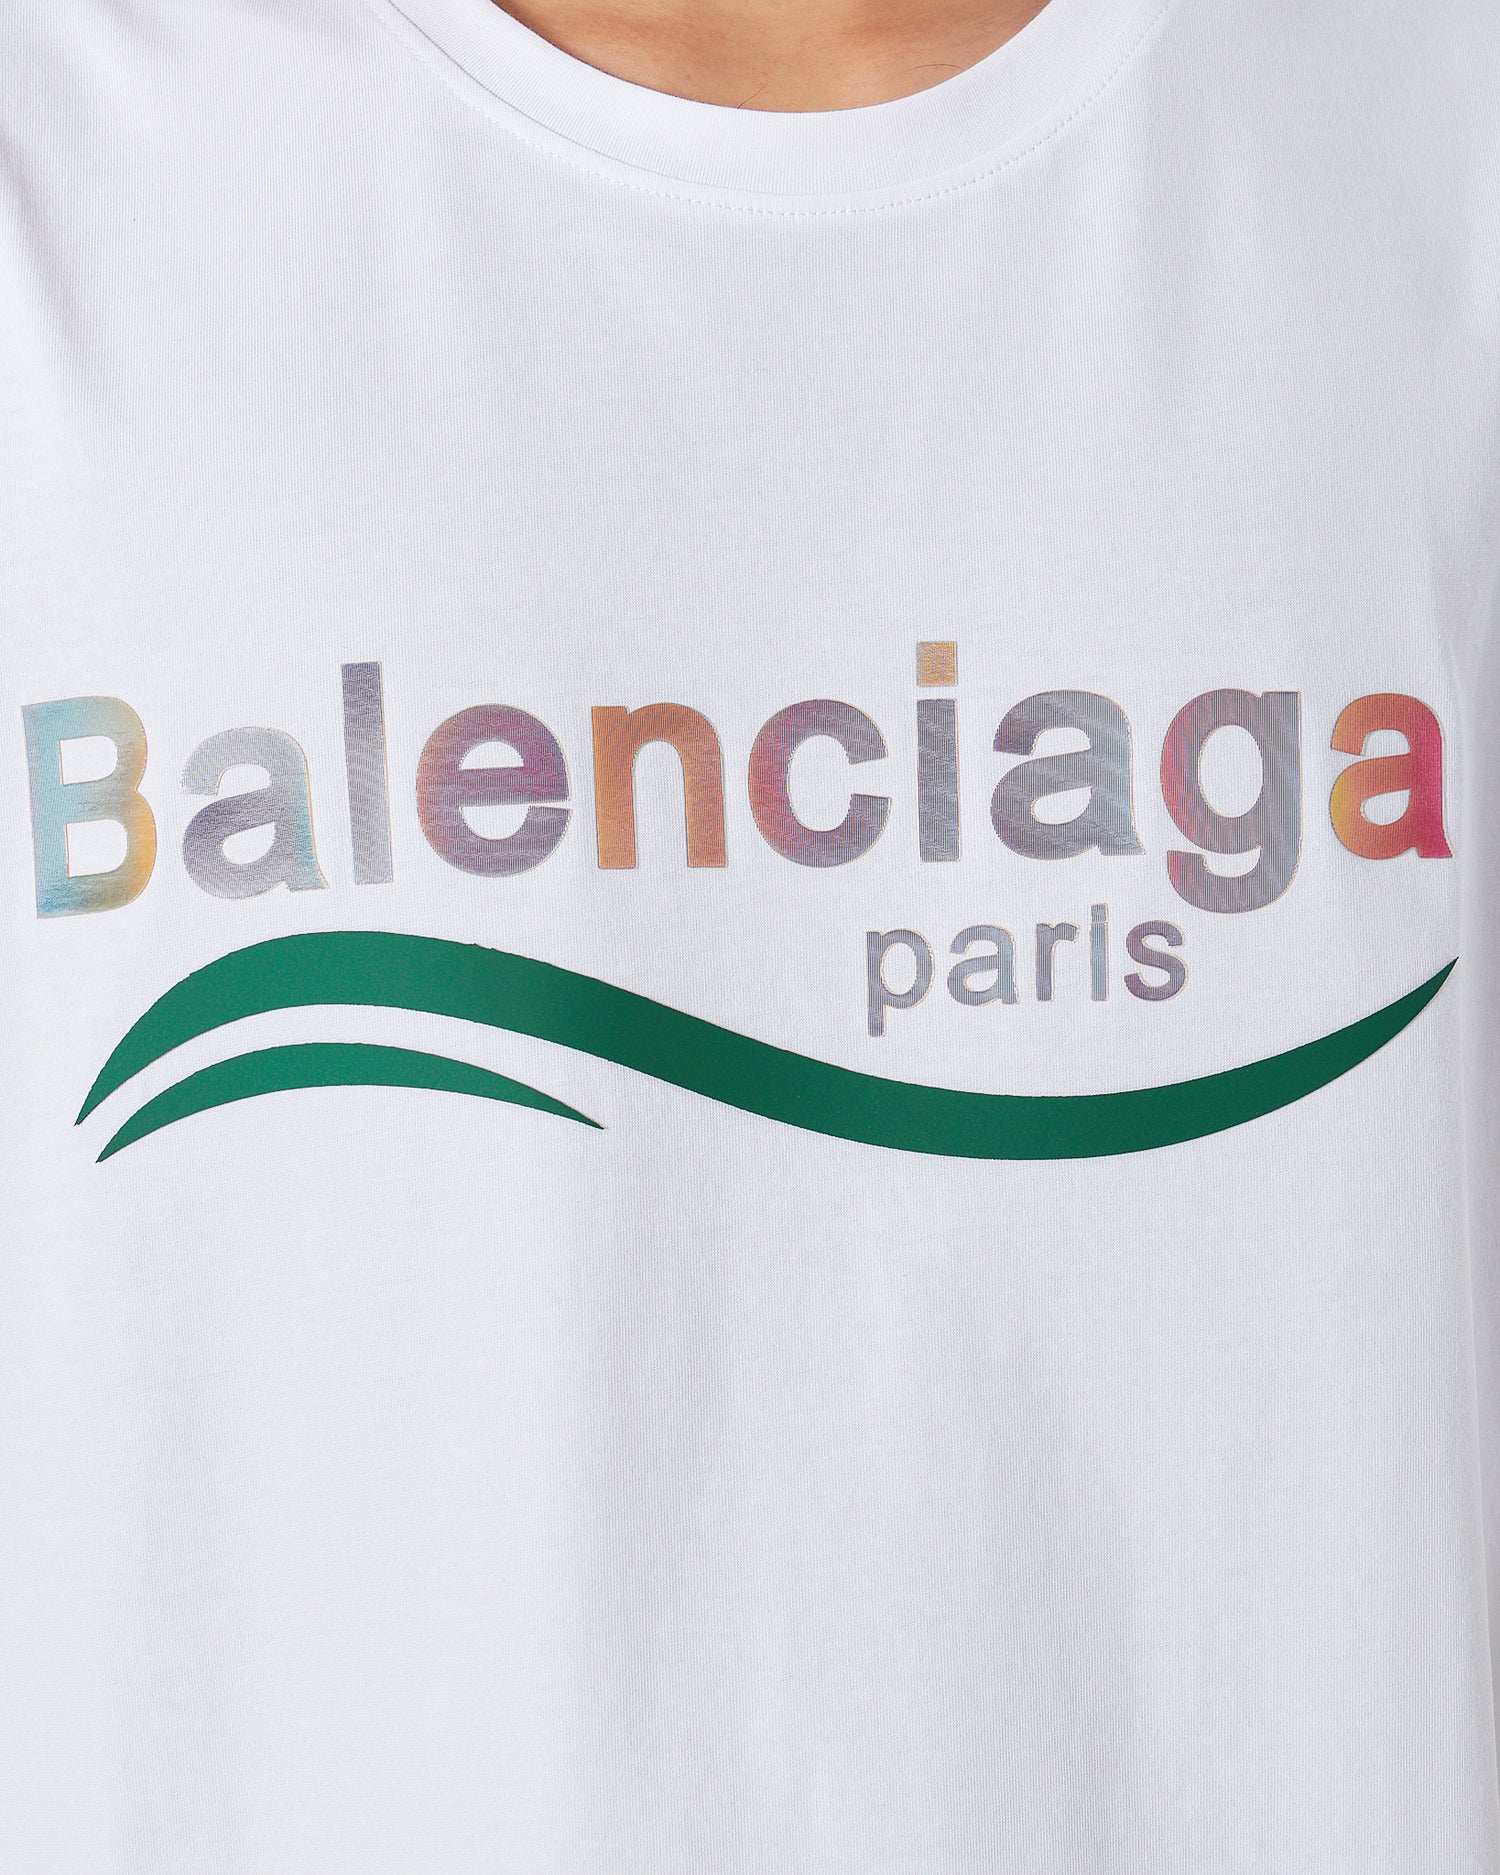 BAL Hologram Logo Men White T-Shirt 52.90